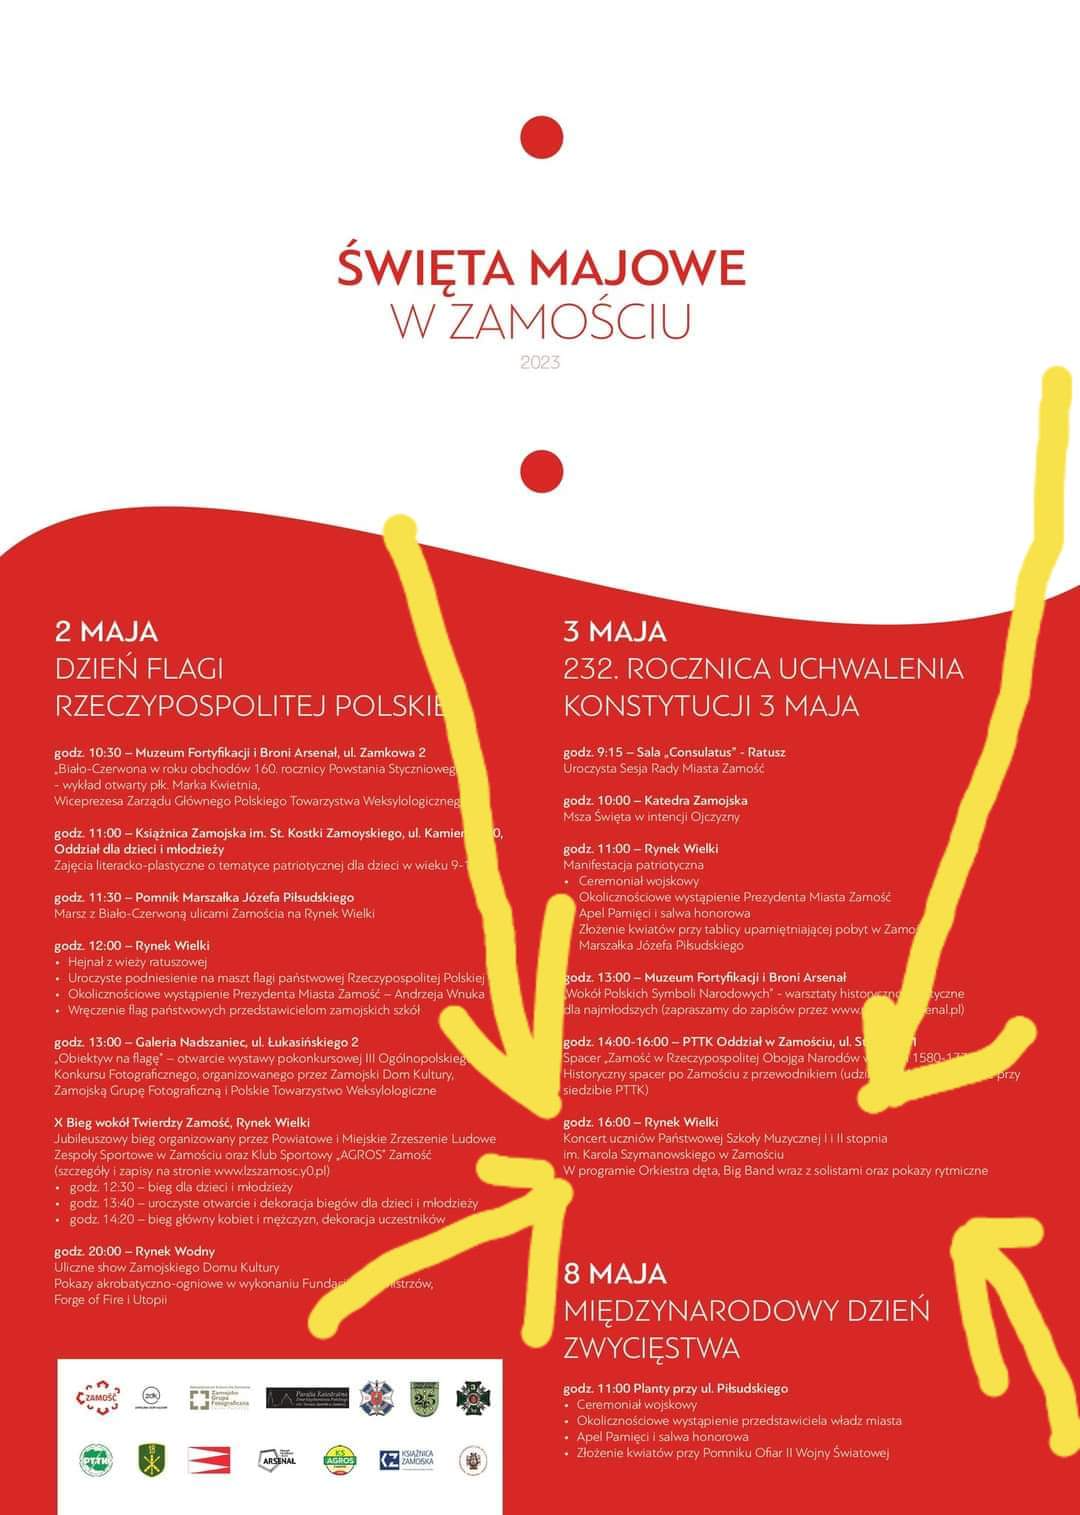 Plakat w kolorze biało czerwonym nawiązującym do flagi Polski. W górnej części napis: "Święta Majowe w Zamościu" w kolorze czerwonym na białym tle. Poniżej szczegółowe informacje o imprezach miejskich w czasie majówki podane białymi literami na czerwonym tle. Wśród nich, informacja o koncercie: "3 maja, godz. 16.00 - Rynek Wielki - Koncert uczniów PSM I i II st. im. K. Szymanowskiego w Zamościu. W programie Orkiestra Dęta, Big-Band wraz z solistami oraz pokazy rytmiczne". U dołu plakatu loga sponsorów i patronów imprezy.